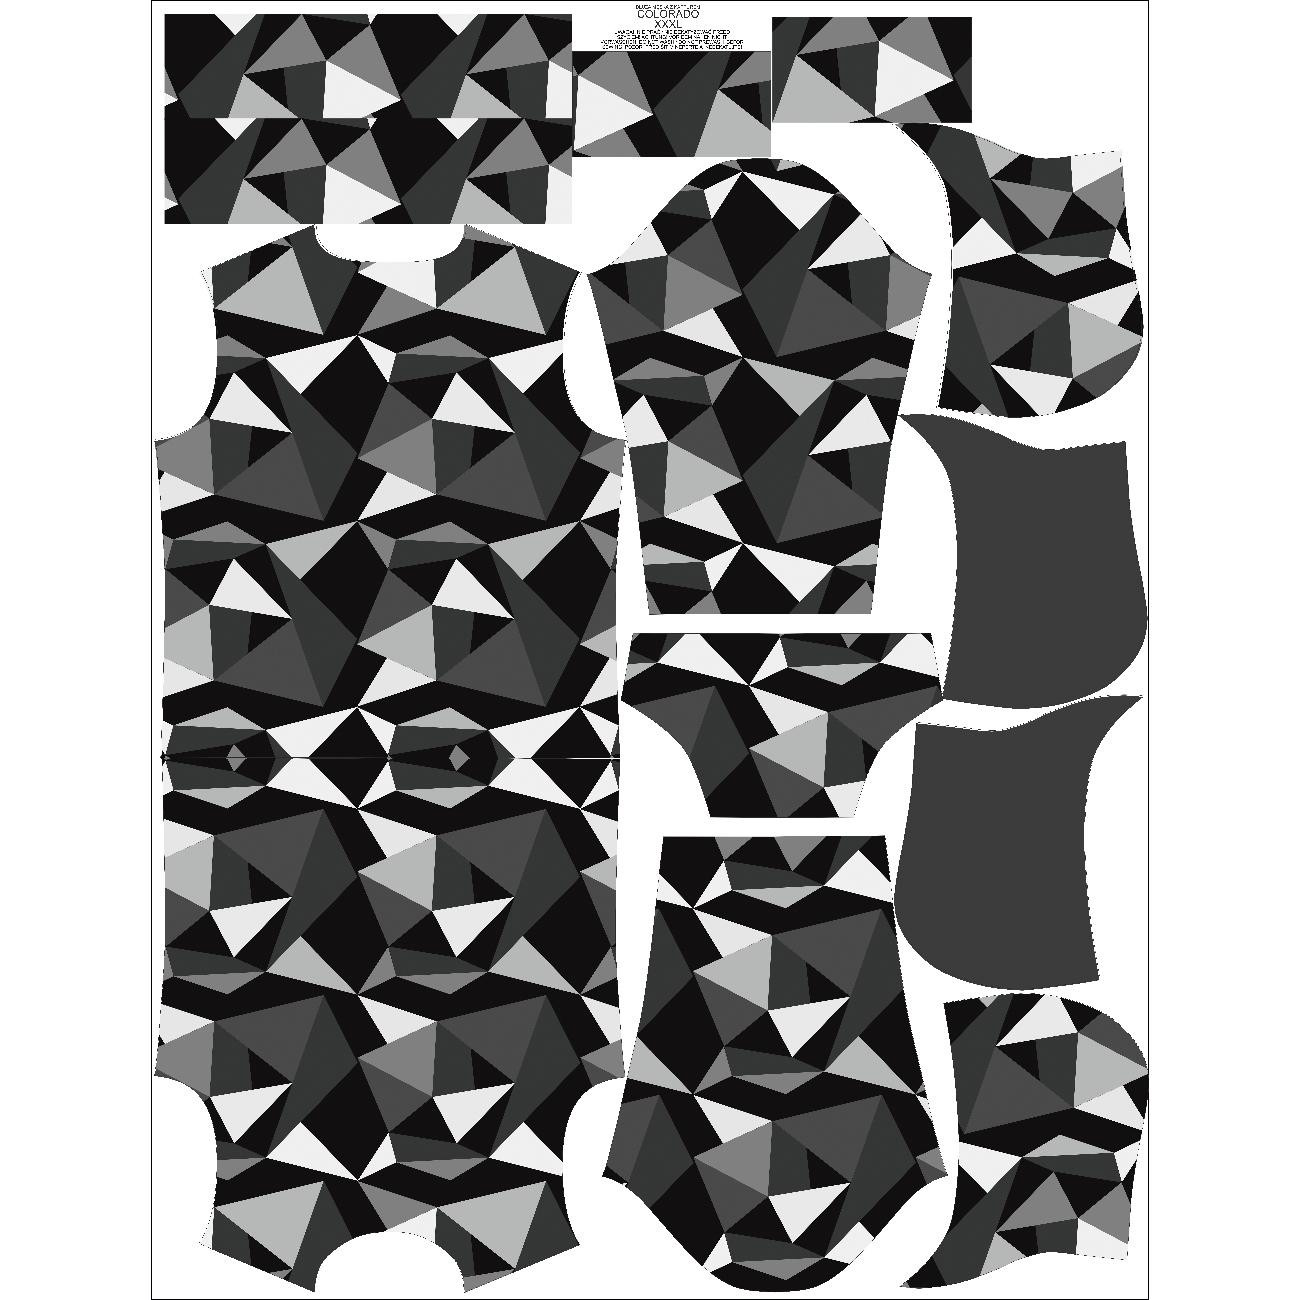 MEN’S HOODIE (COLORADO) - ICE PAT. 2 / black - white - sewing set